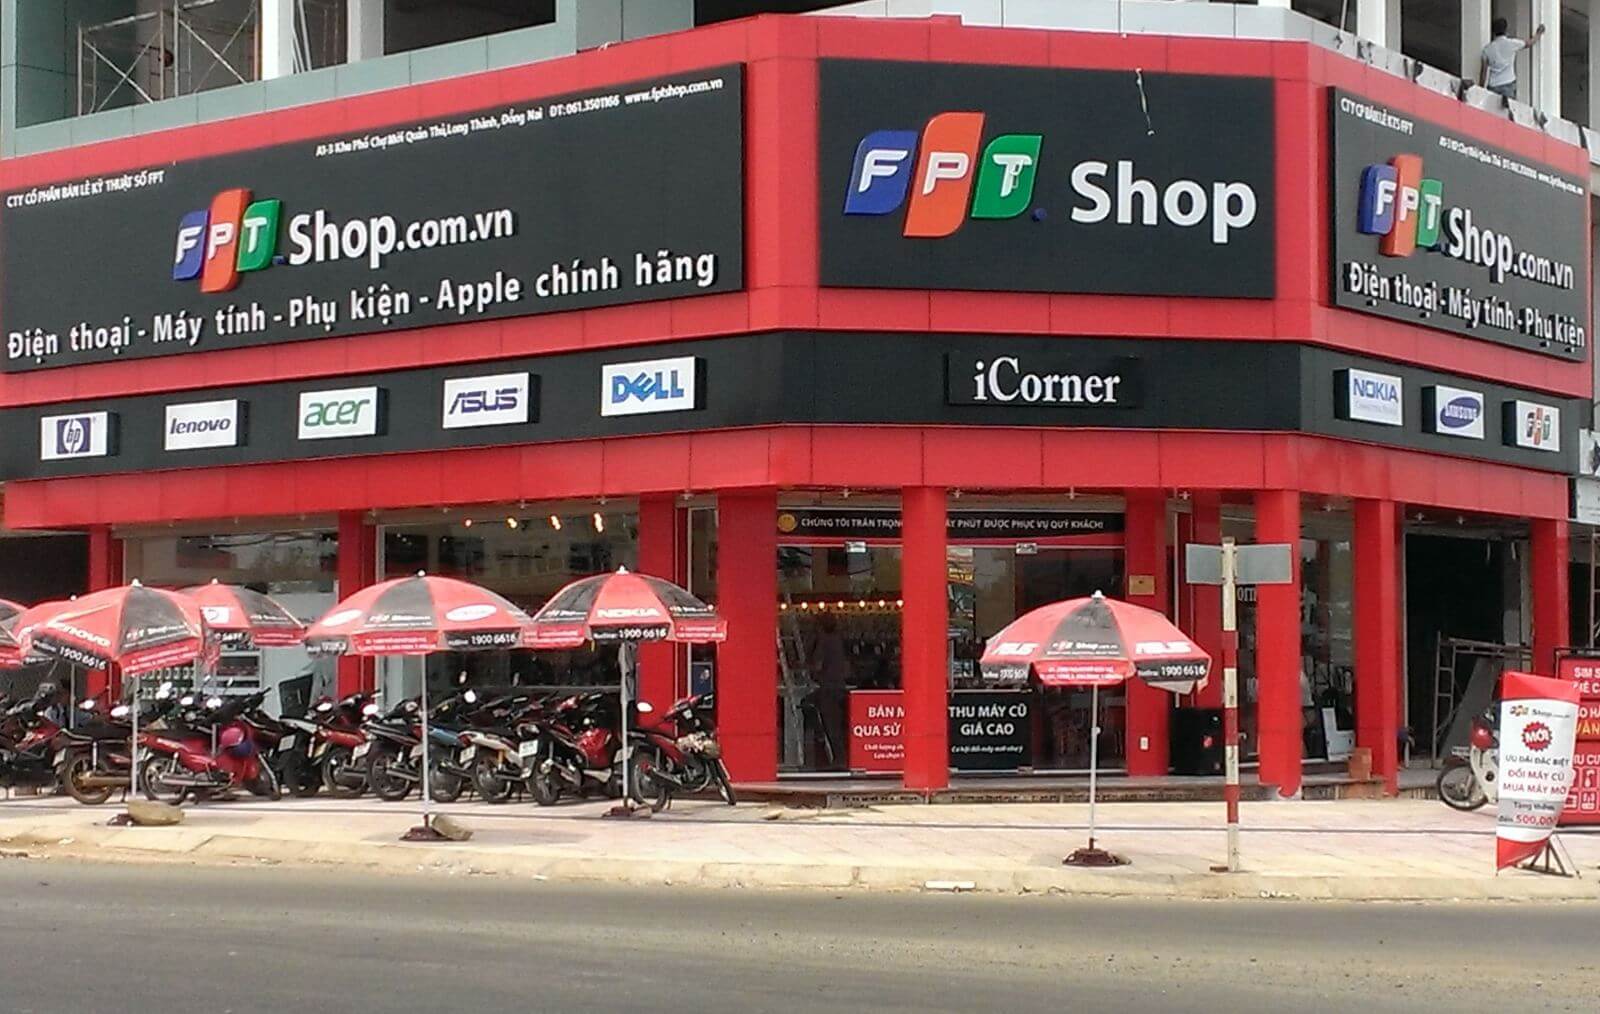 Fpt Shop cung cấp dịch vụ sim thẻ Viettel